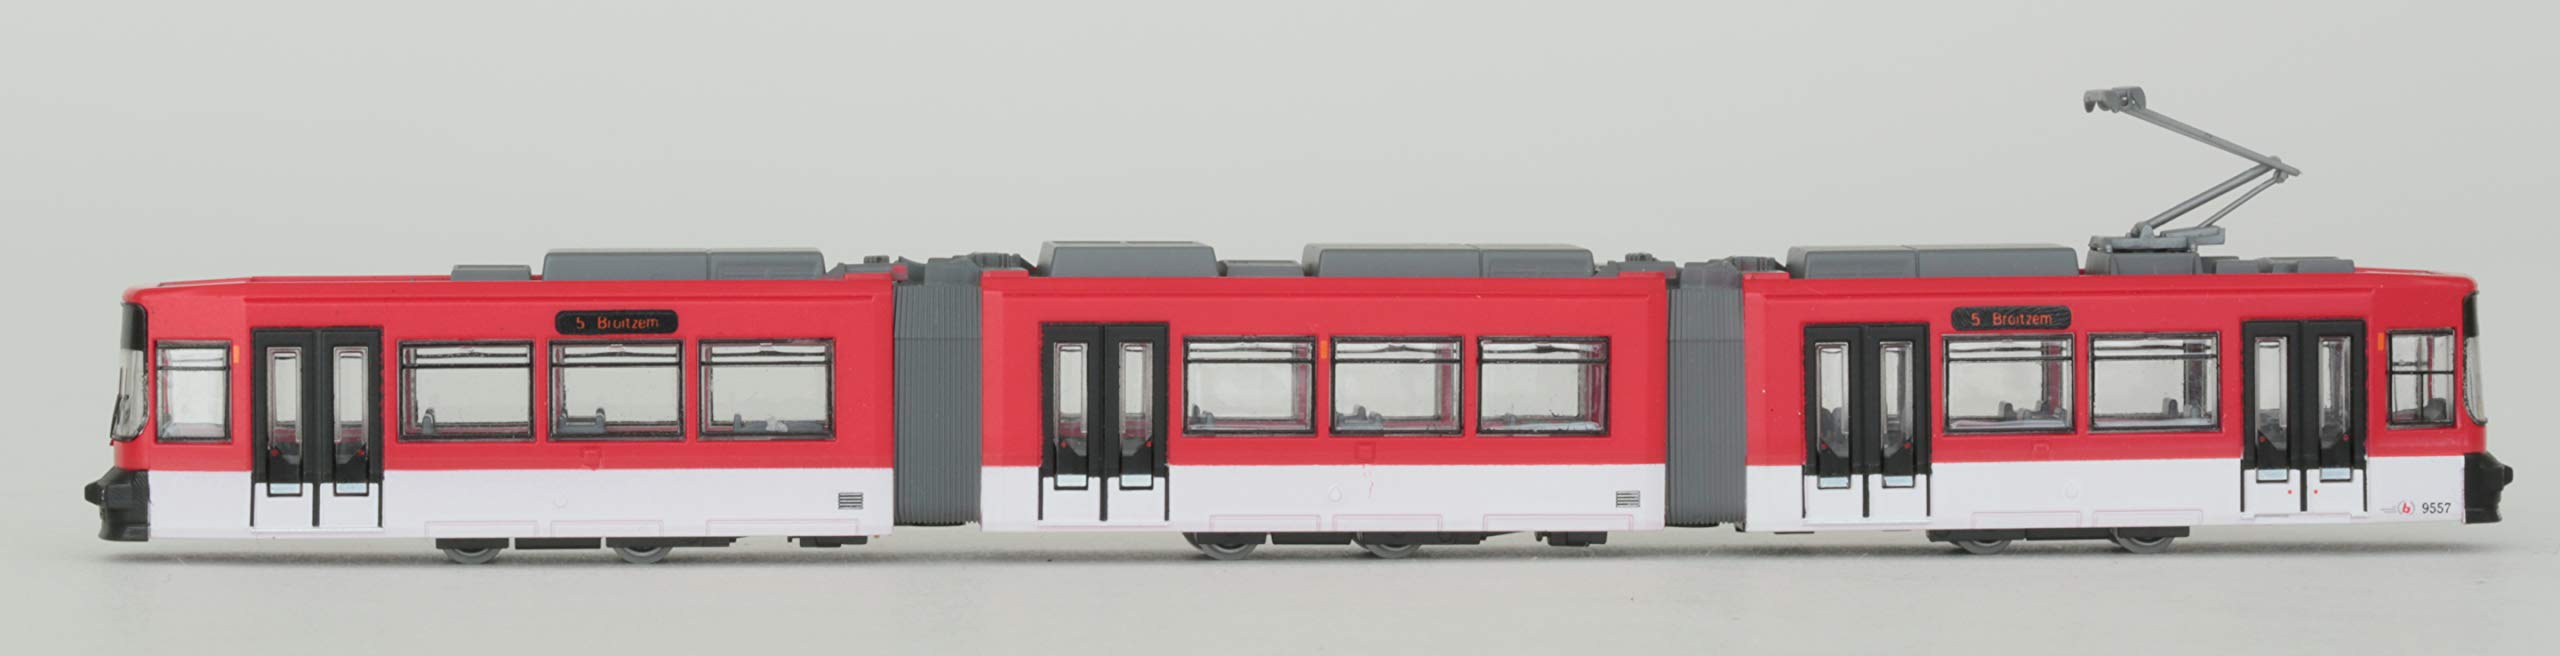 Modèle ferroviaire Tomytec - Collection de fer de type Gt6S Braunschweigtrum édition limitée